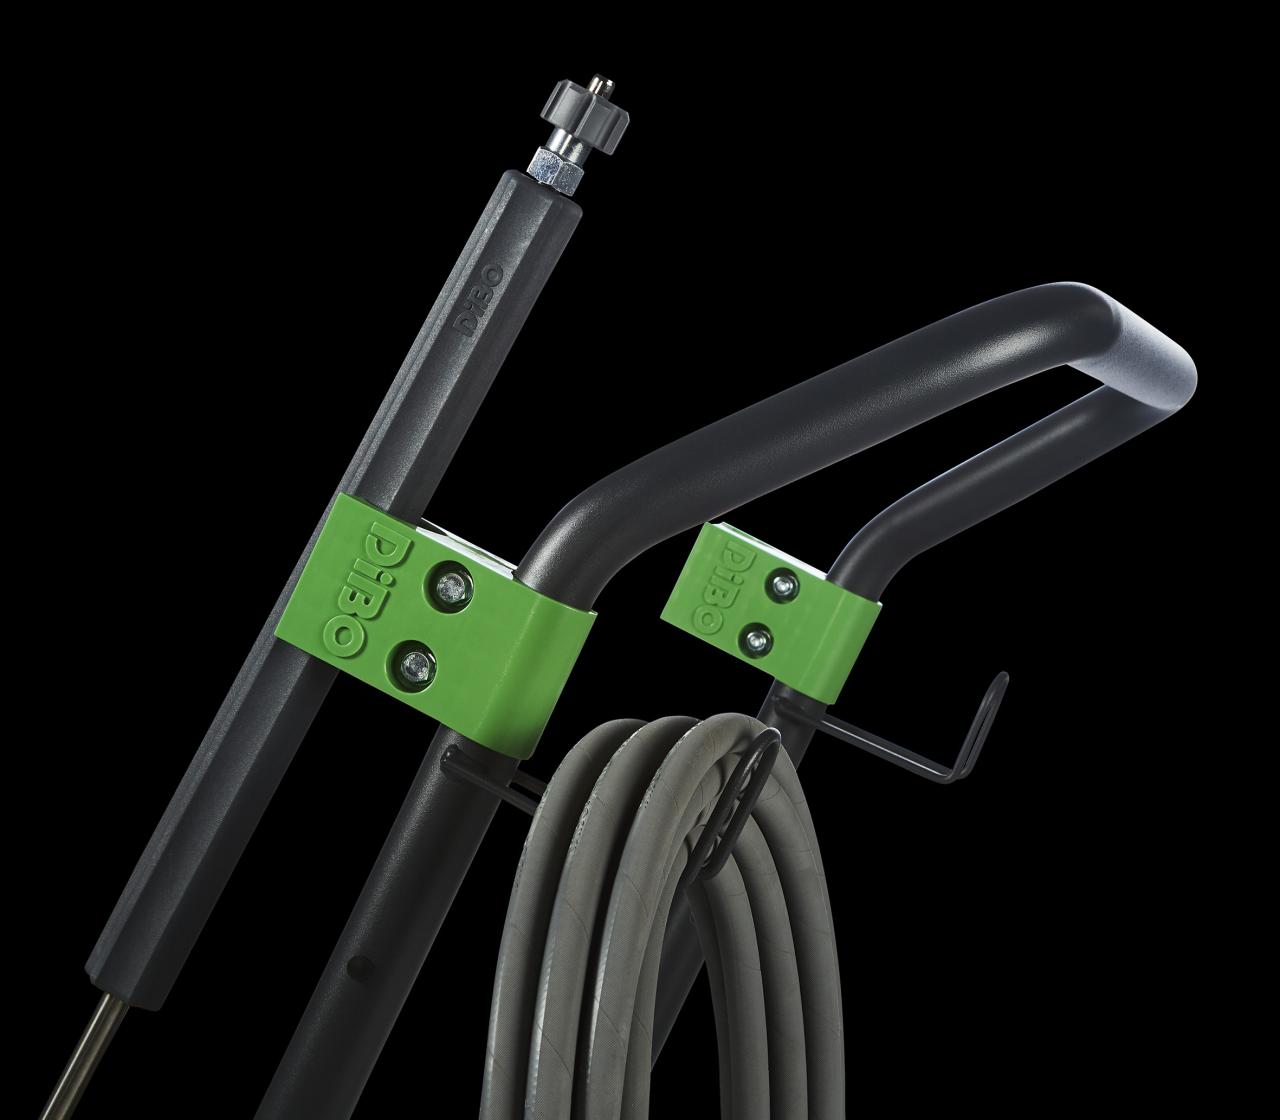 Double lance holder for ergonomics-DiBO ECN-M-L